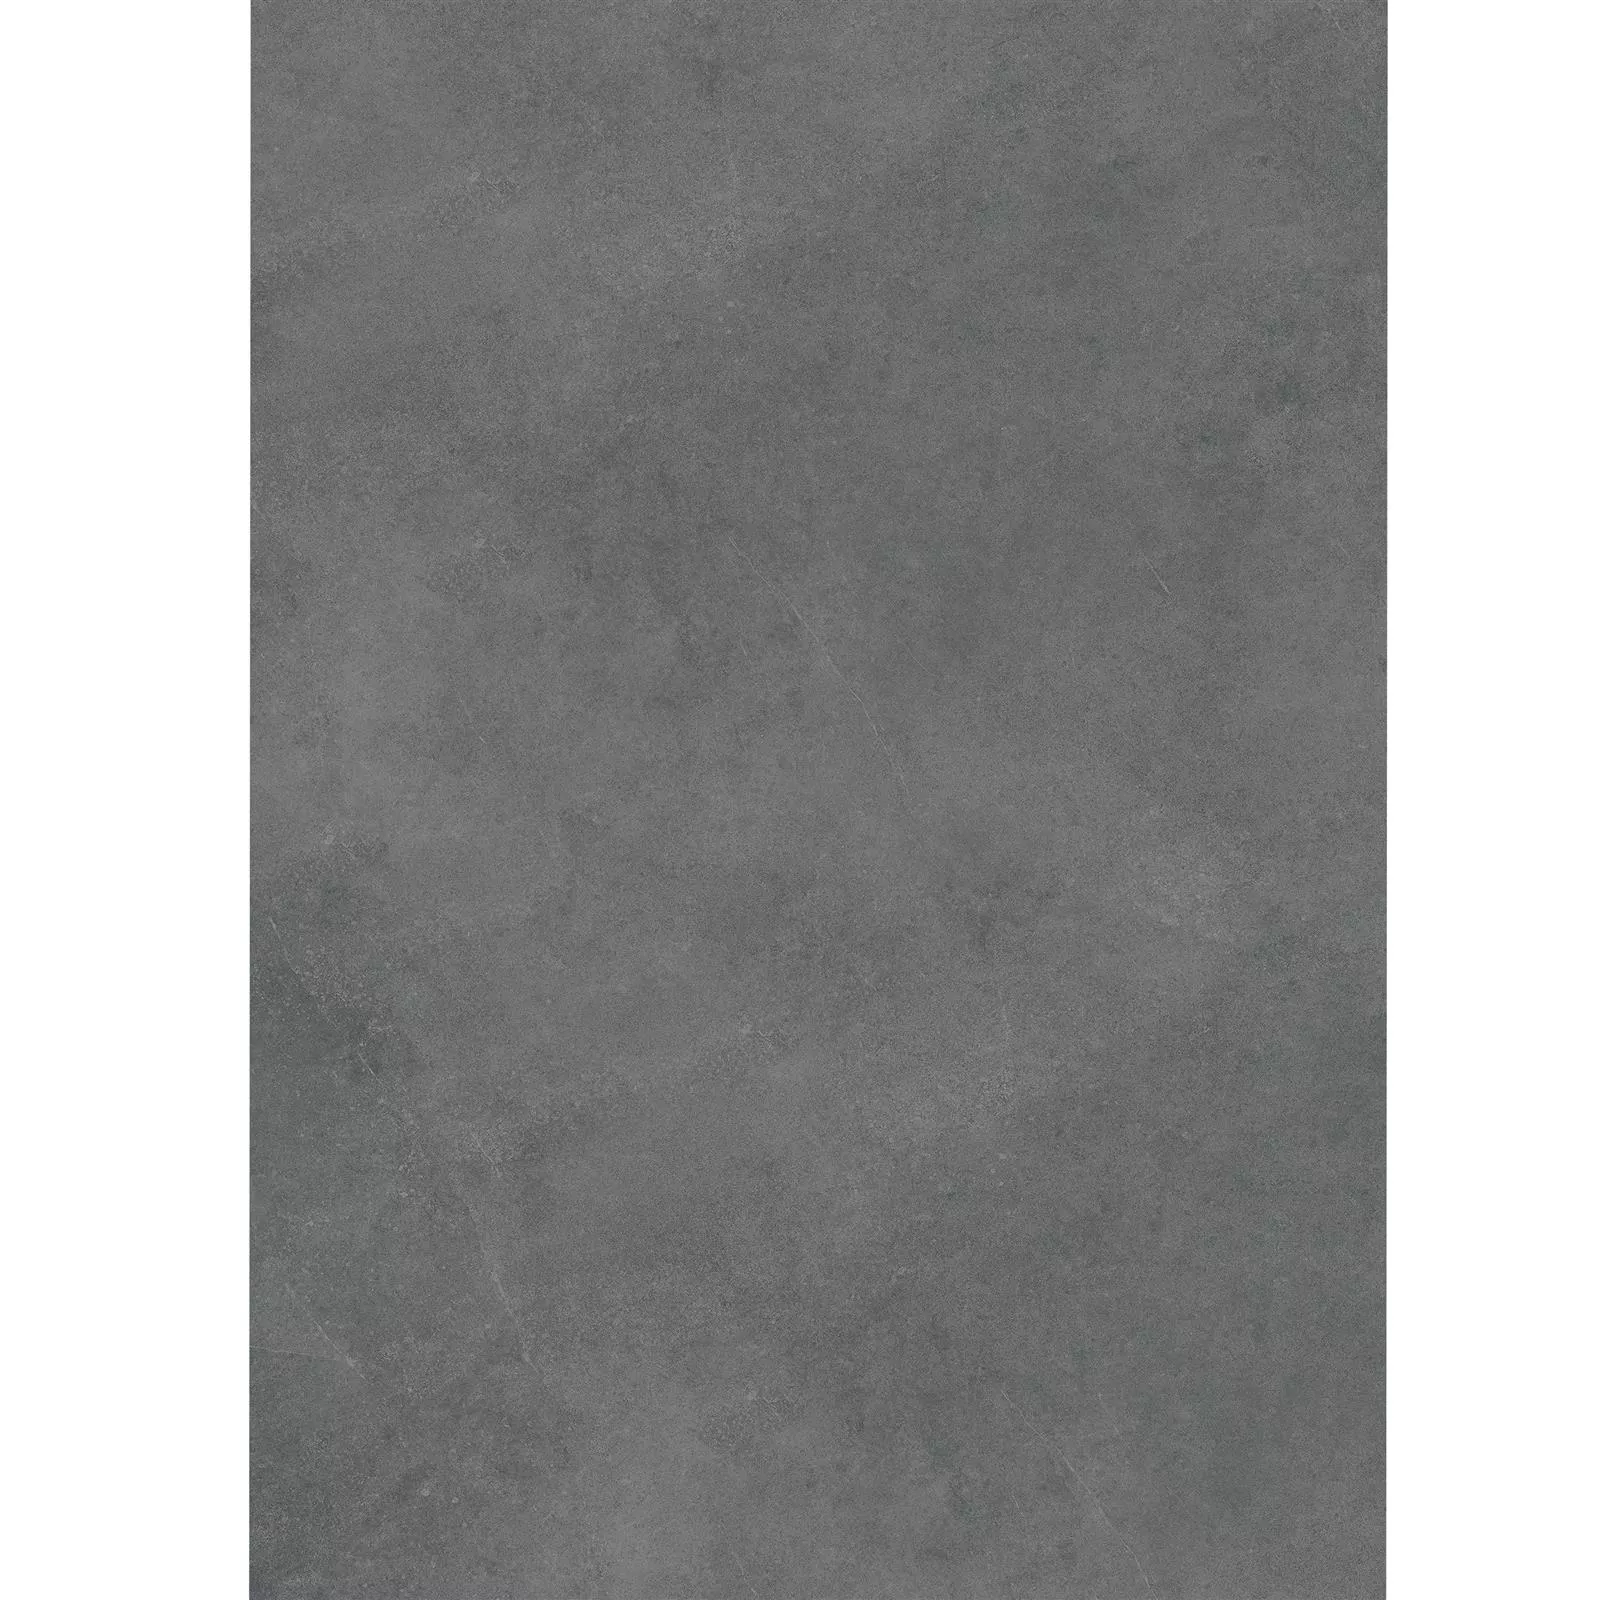 Échantillon Dalles De Terrasse Optique De Ciment Glinde Anthracite 60x120cm